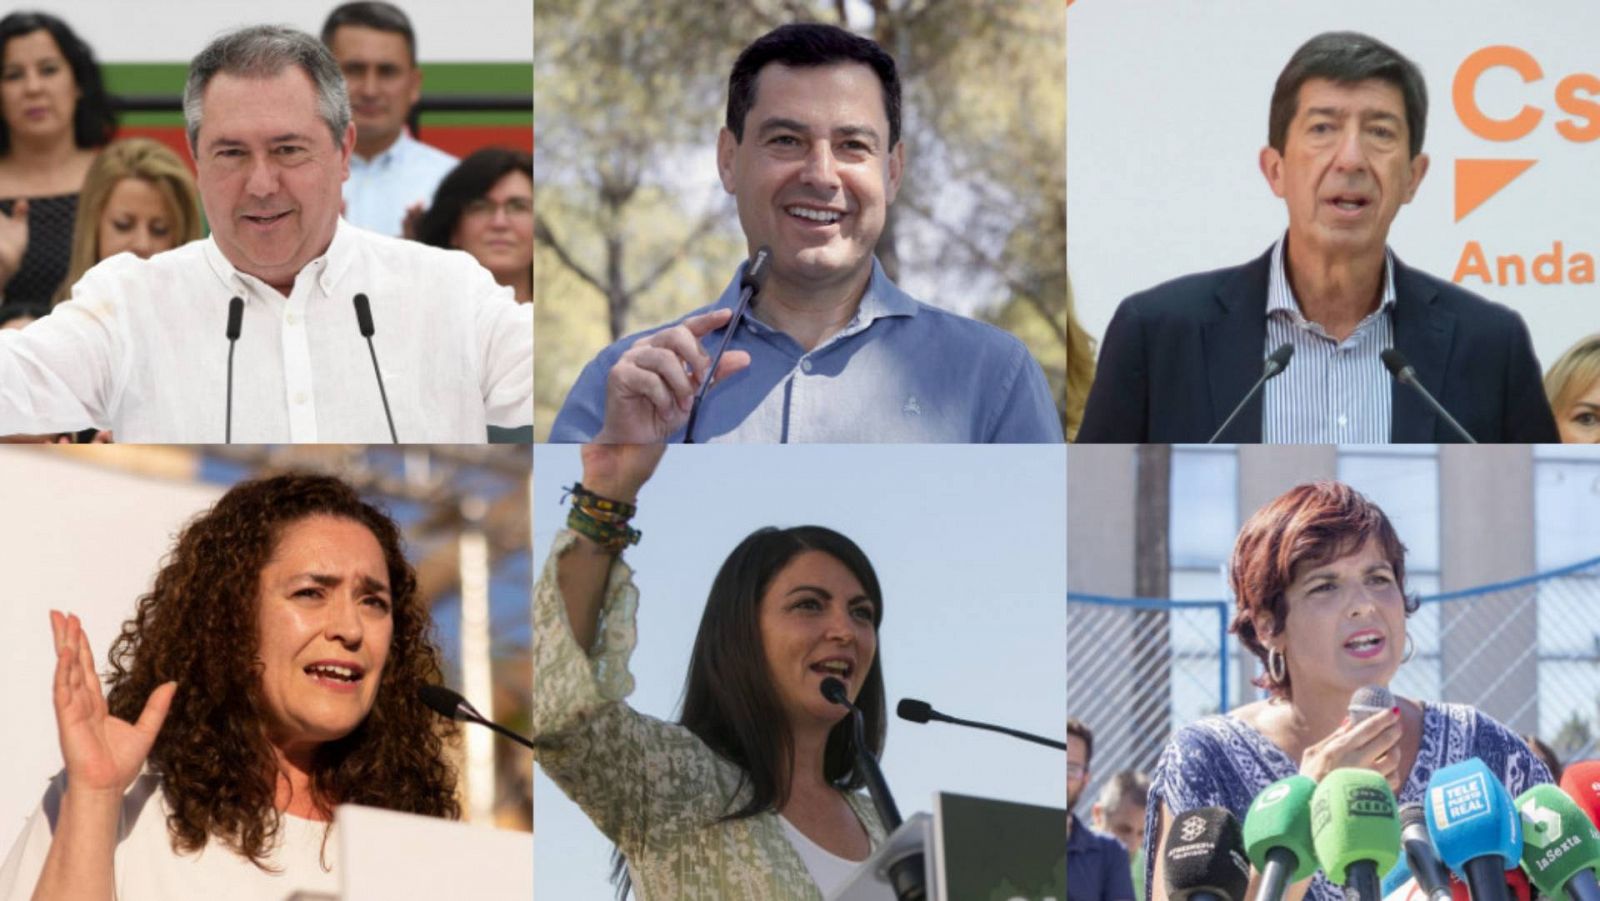 La campaña electoral sigue en Andalucía con el debate electoral de fondo